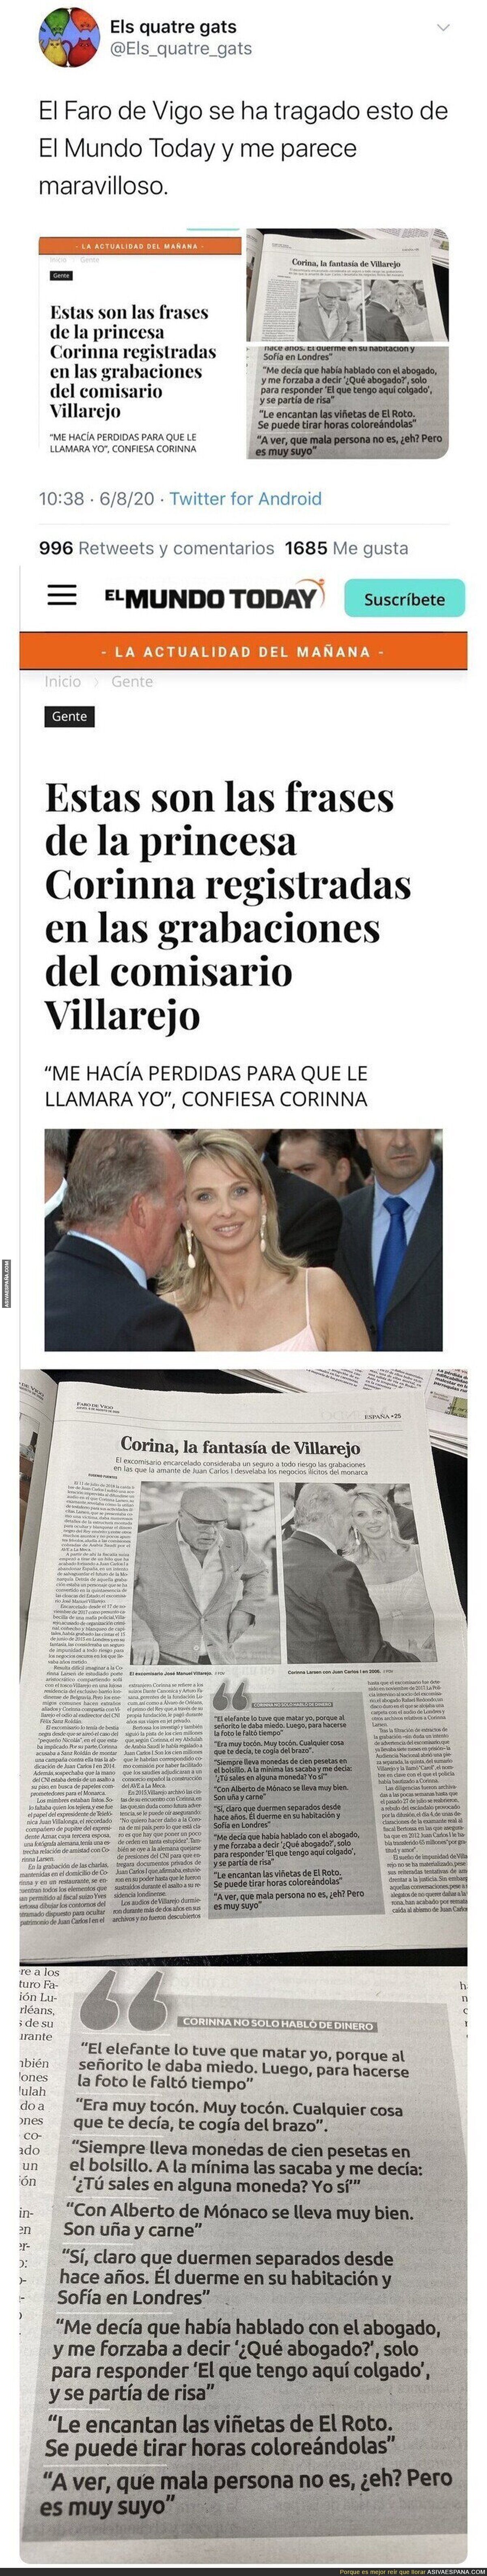 Espectacular: El 'Faro de Vigo' da como noticia real todas estas frases falsas de Corinna salidas de 'El Mundo Today'